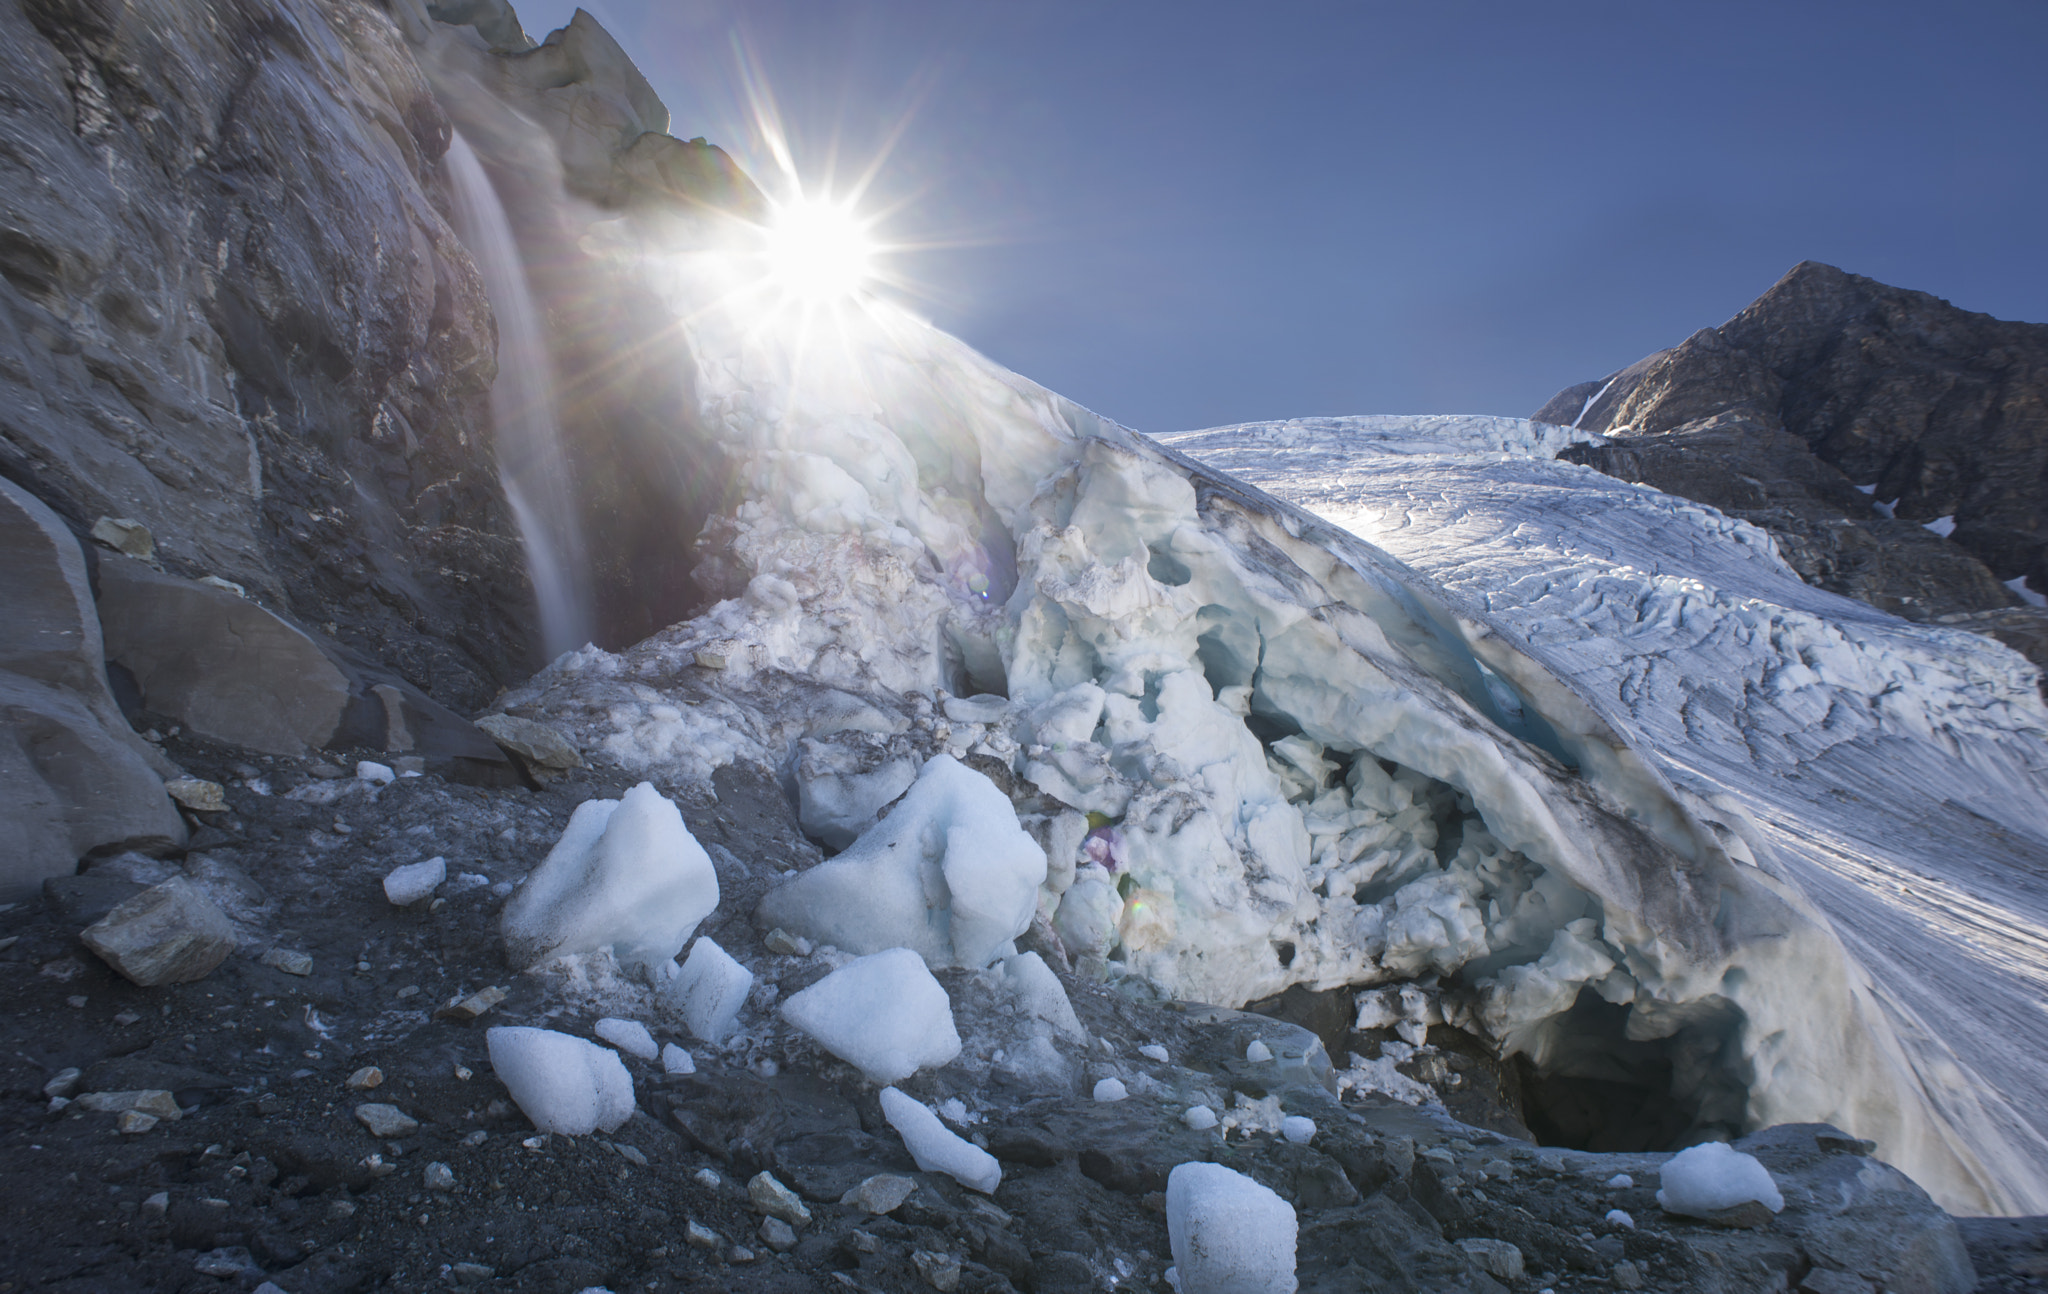 Nikon D610 + AF Nikkor 20mm f/2.8 sample photo. Gietro glacier in the summer. photography